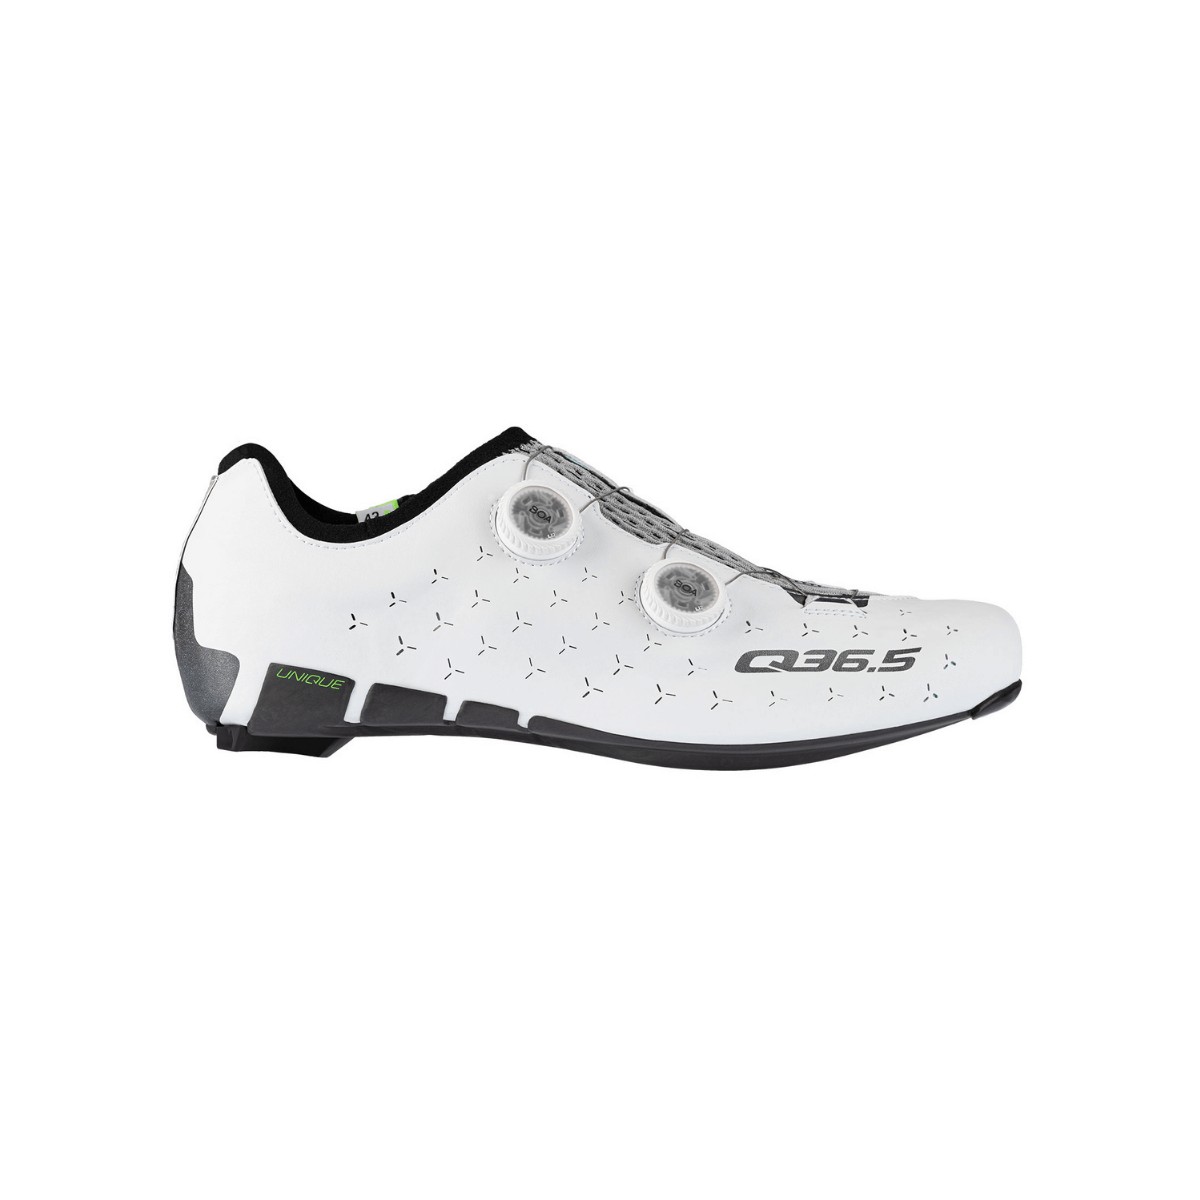 Q36.5 Unique Road White Shoes, Size 43 - EUR